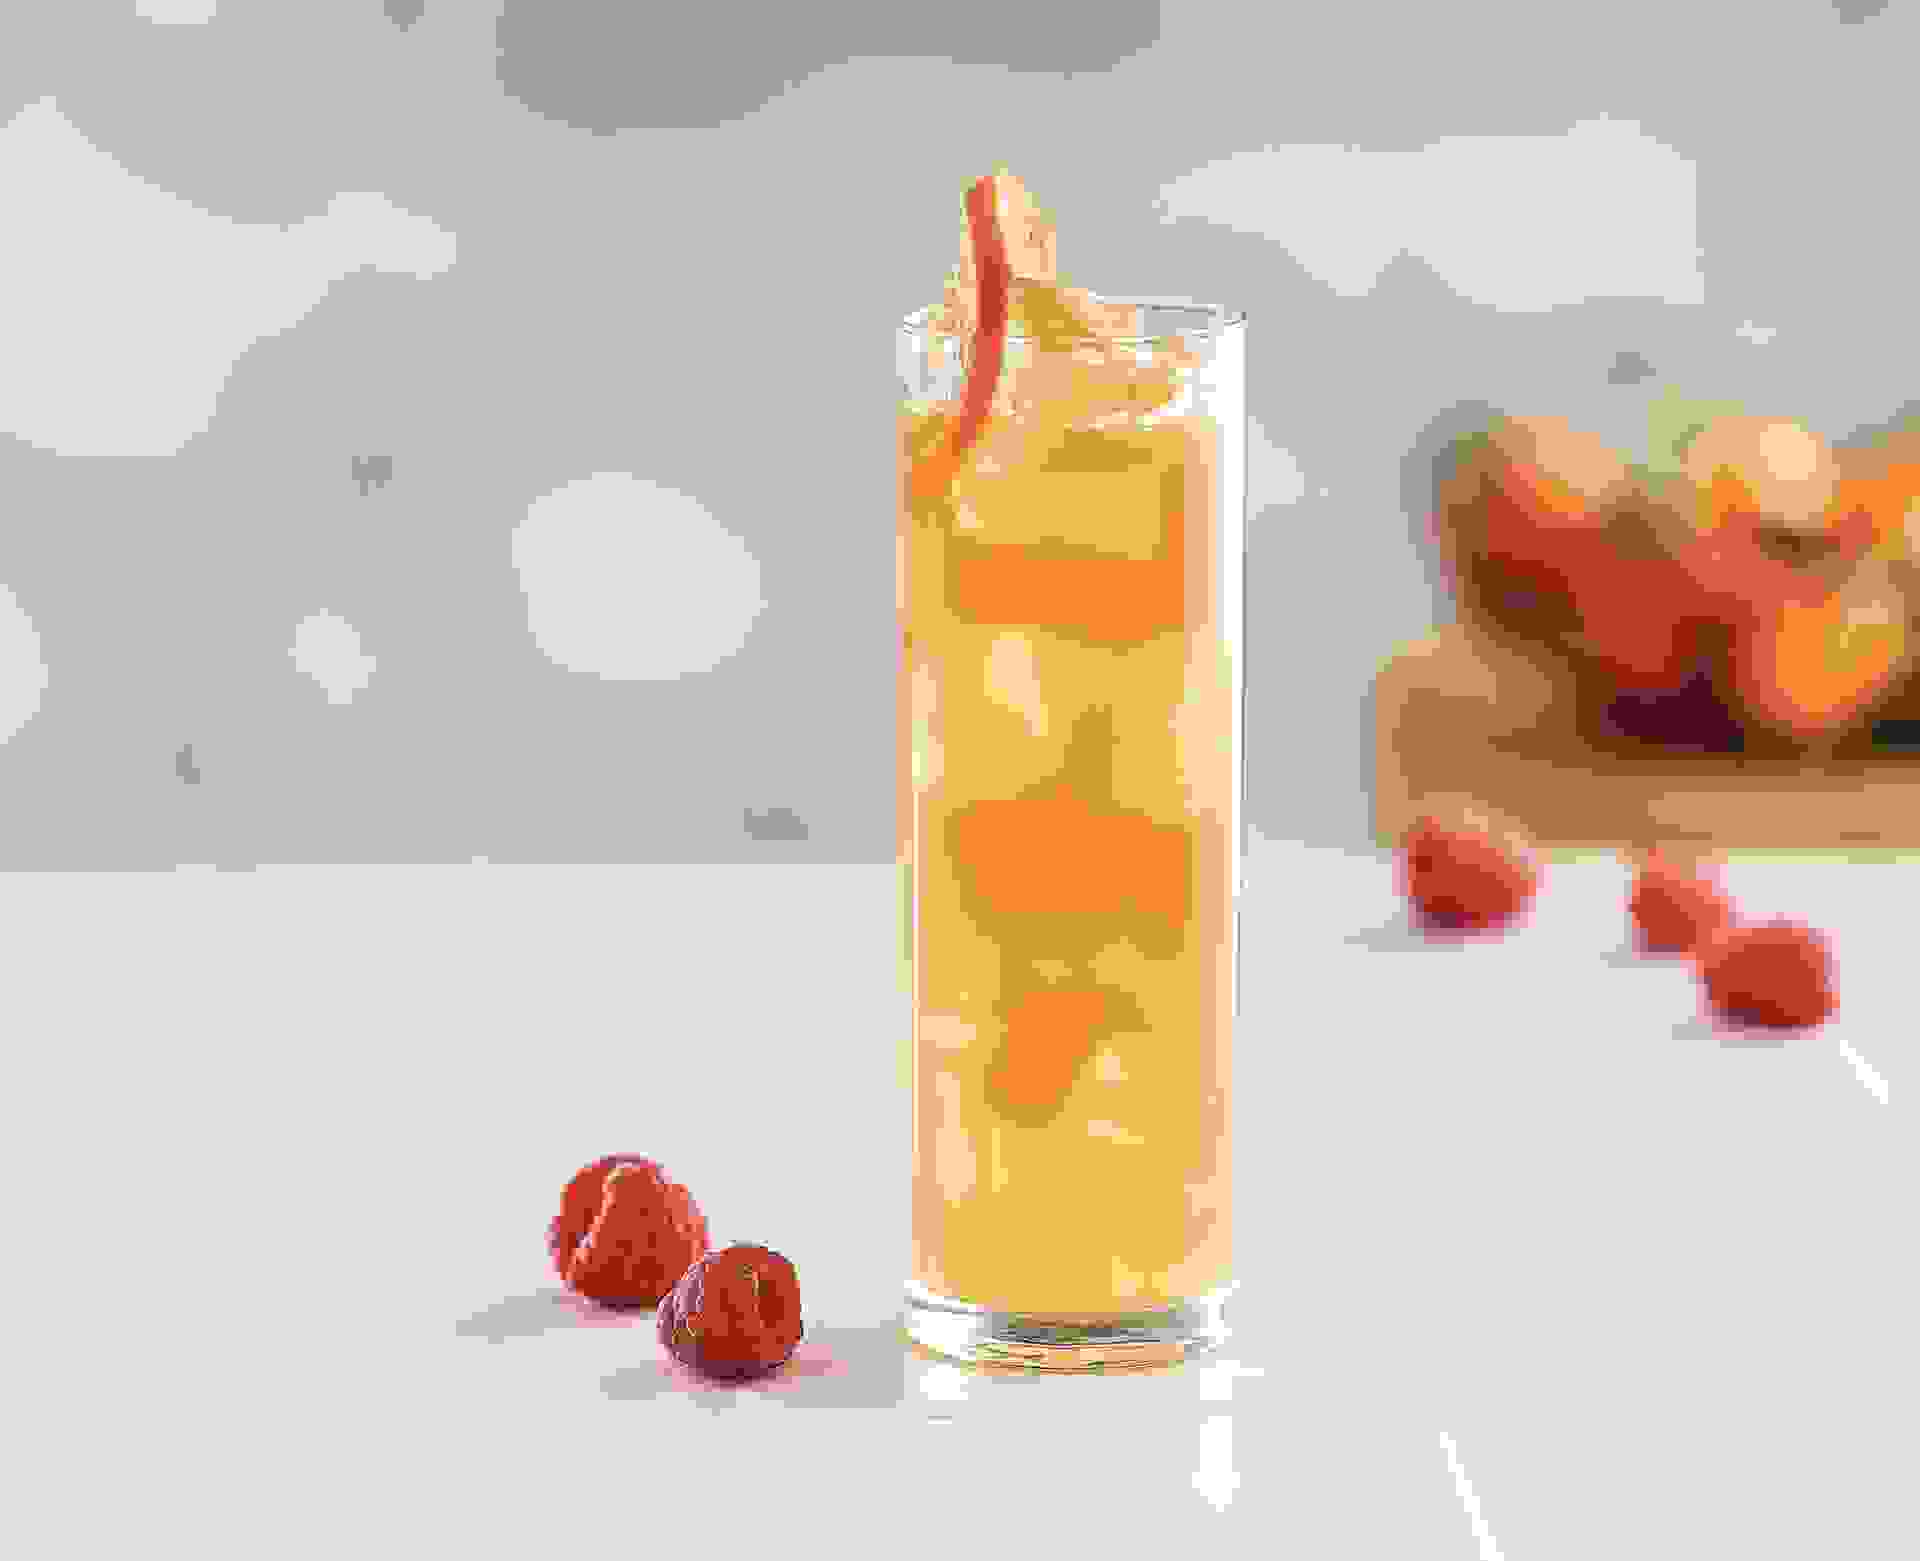 Cocktail I Want to be a Fruit réalisé avec le sirop Framboise, Cranberry, Tropical Teisseire, servi dans un verre.